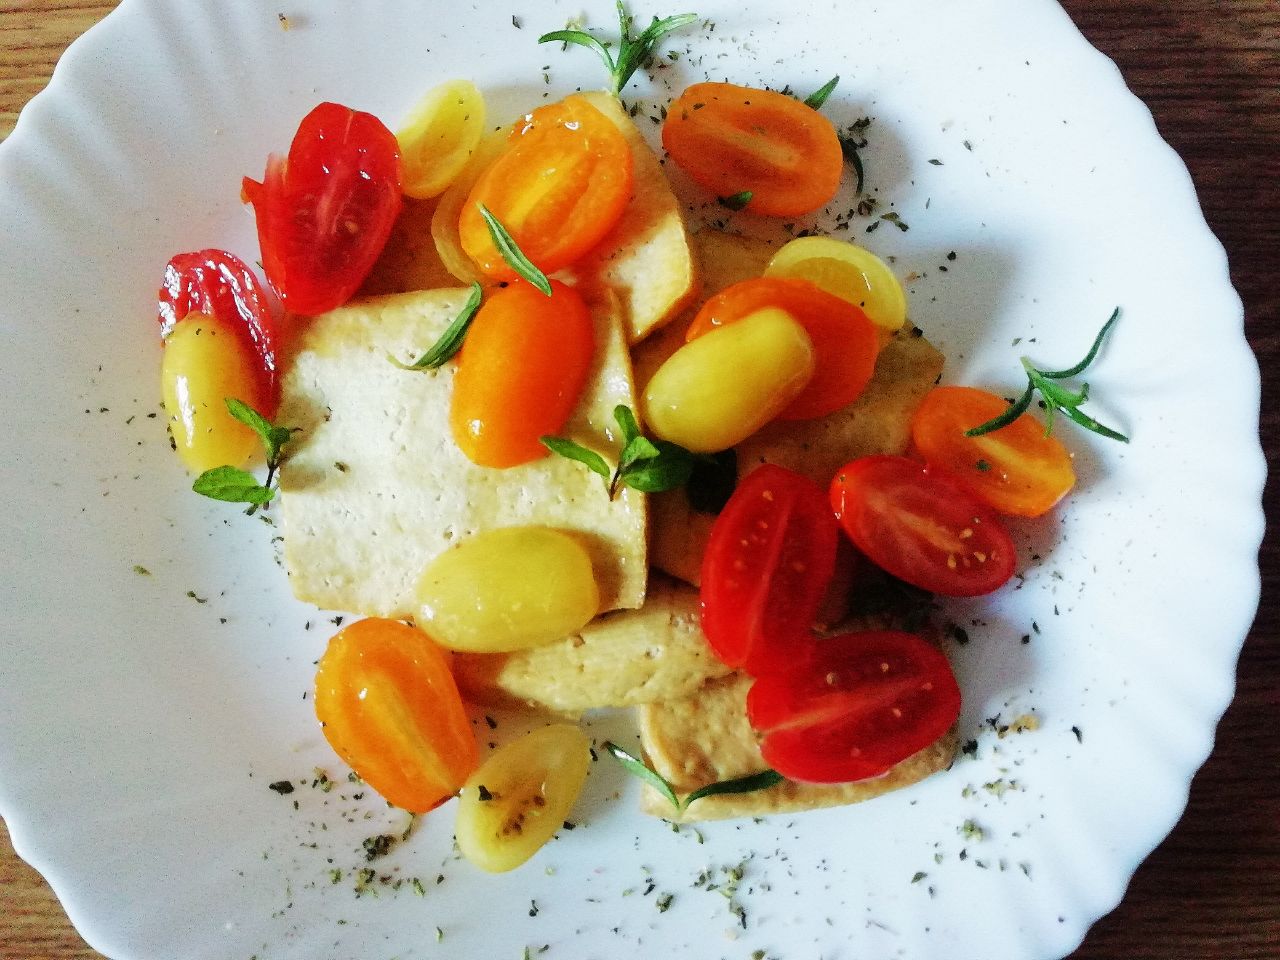 Secondi piatti vegetariani semplici e veloci: tofu al forno con pomodori datterini rosmarino e menta!